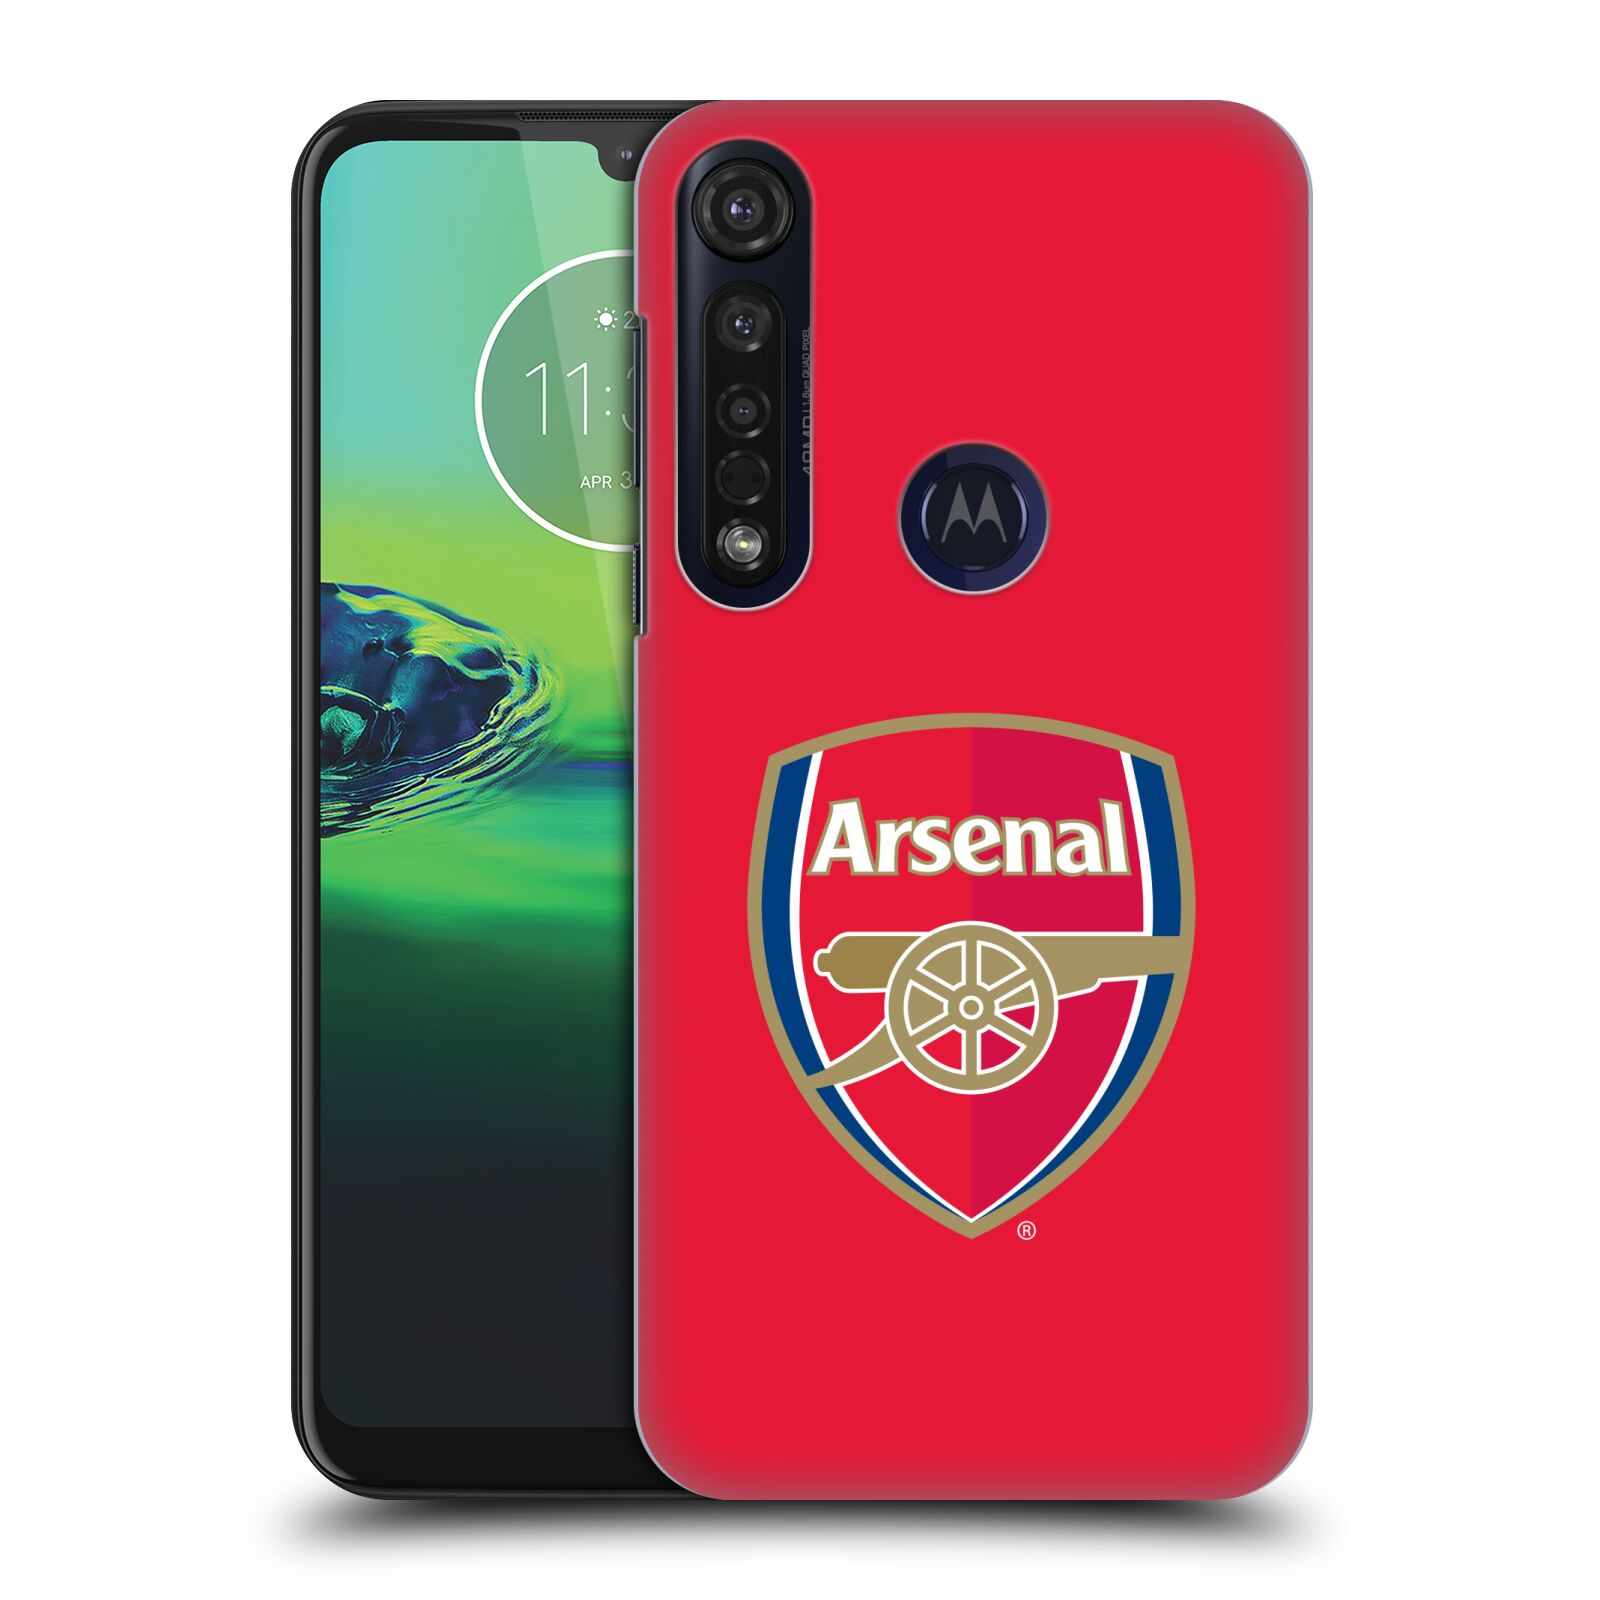 Pouzdro na mobil Motorola Moto G8 PLUS - HEAD CASE - Fotbalový klub Arsenal znak barevný červené pozadí